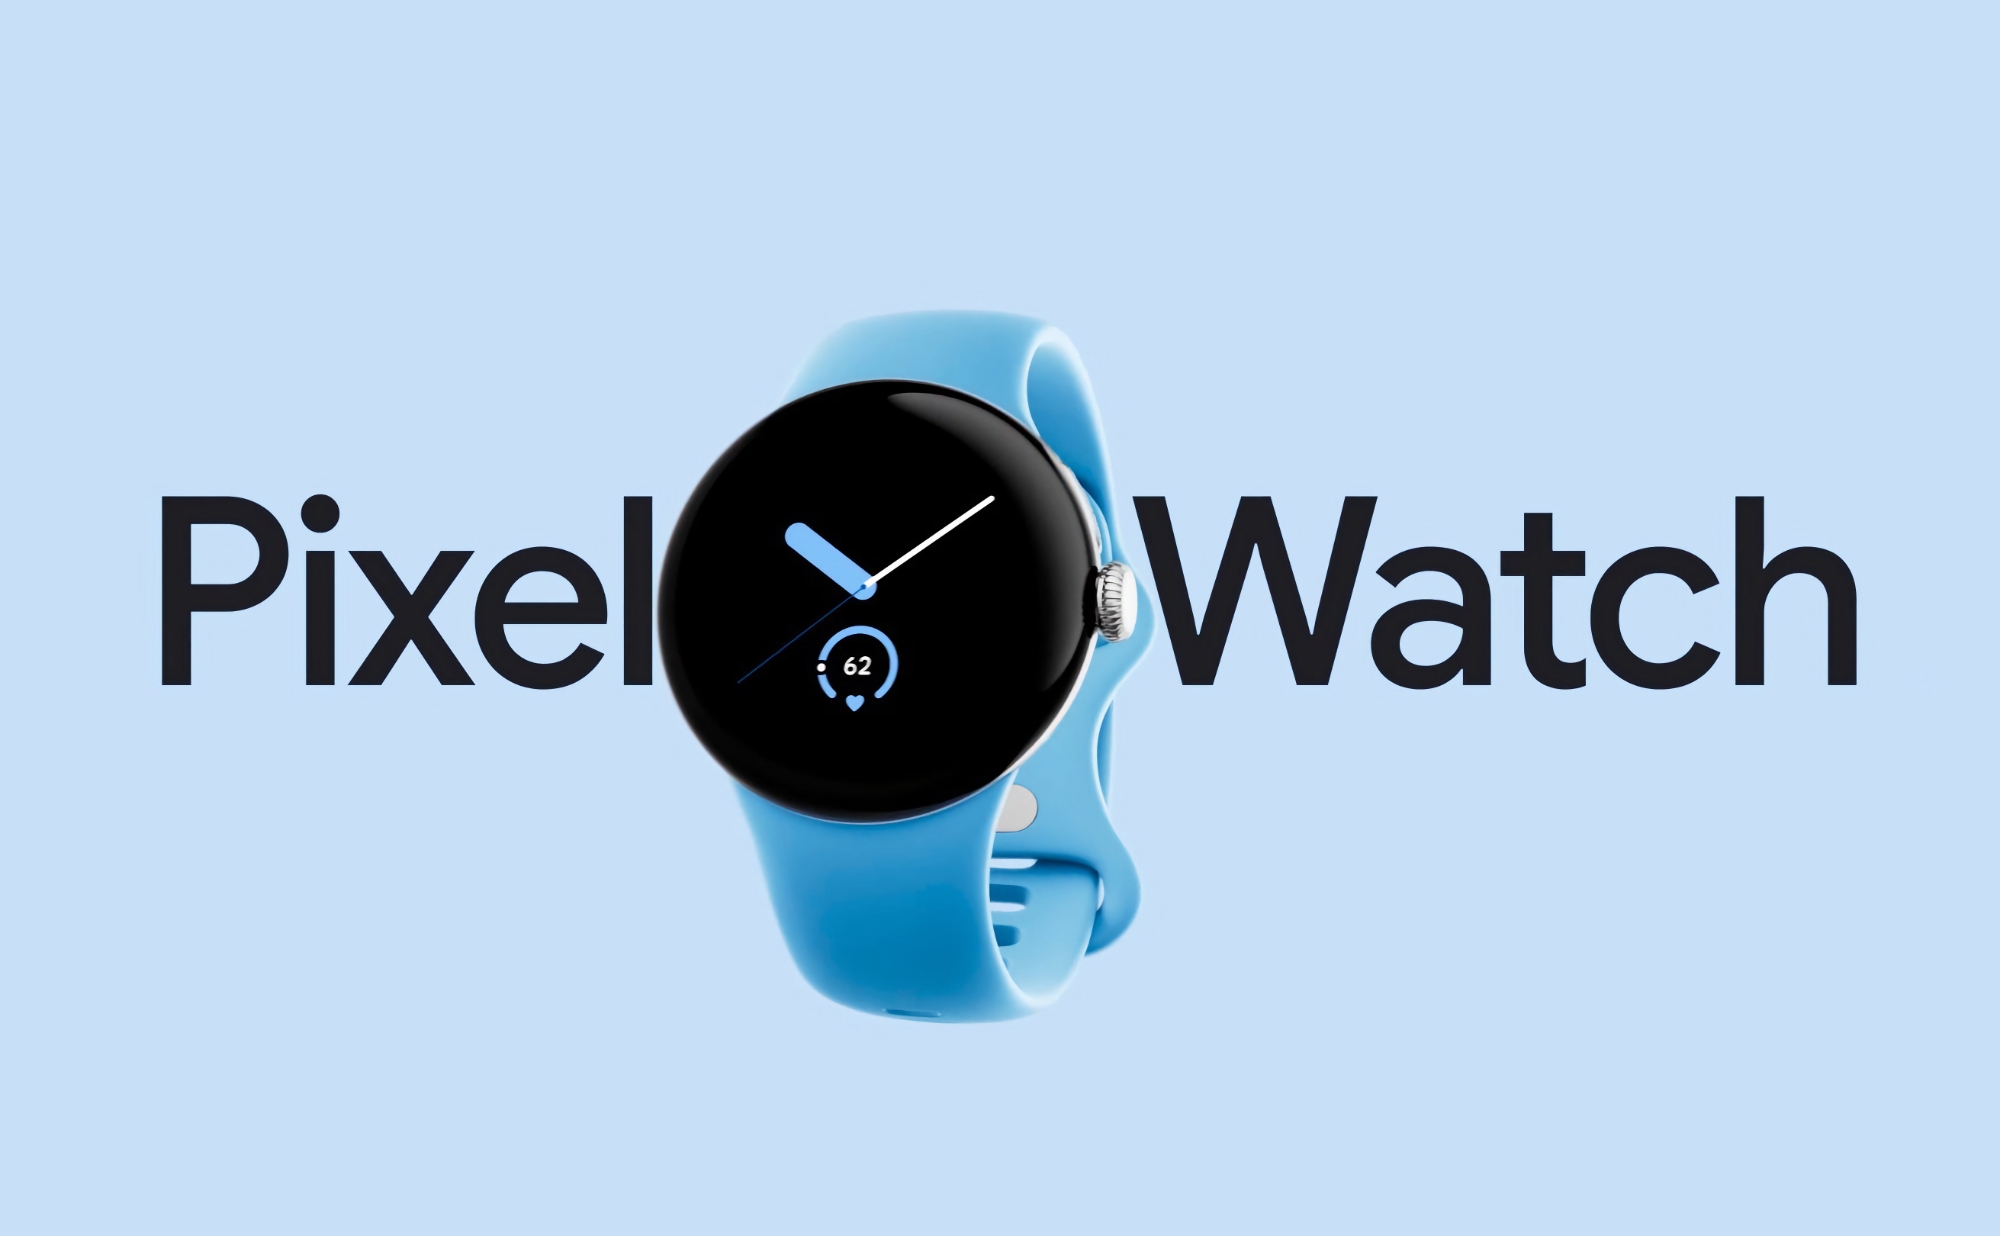 De originele Google Pixel Watch met Wi-Fi is verkrijgbaar bij Amazon voor een gereduceerde prijs van $74.